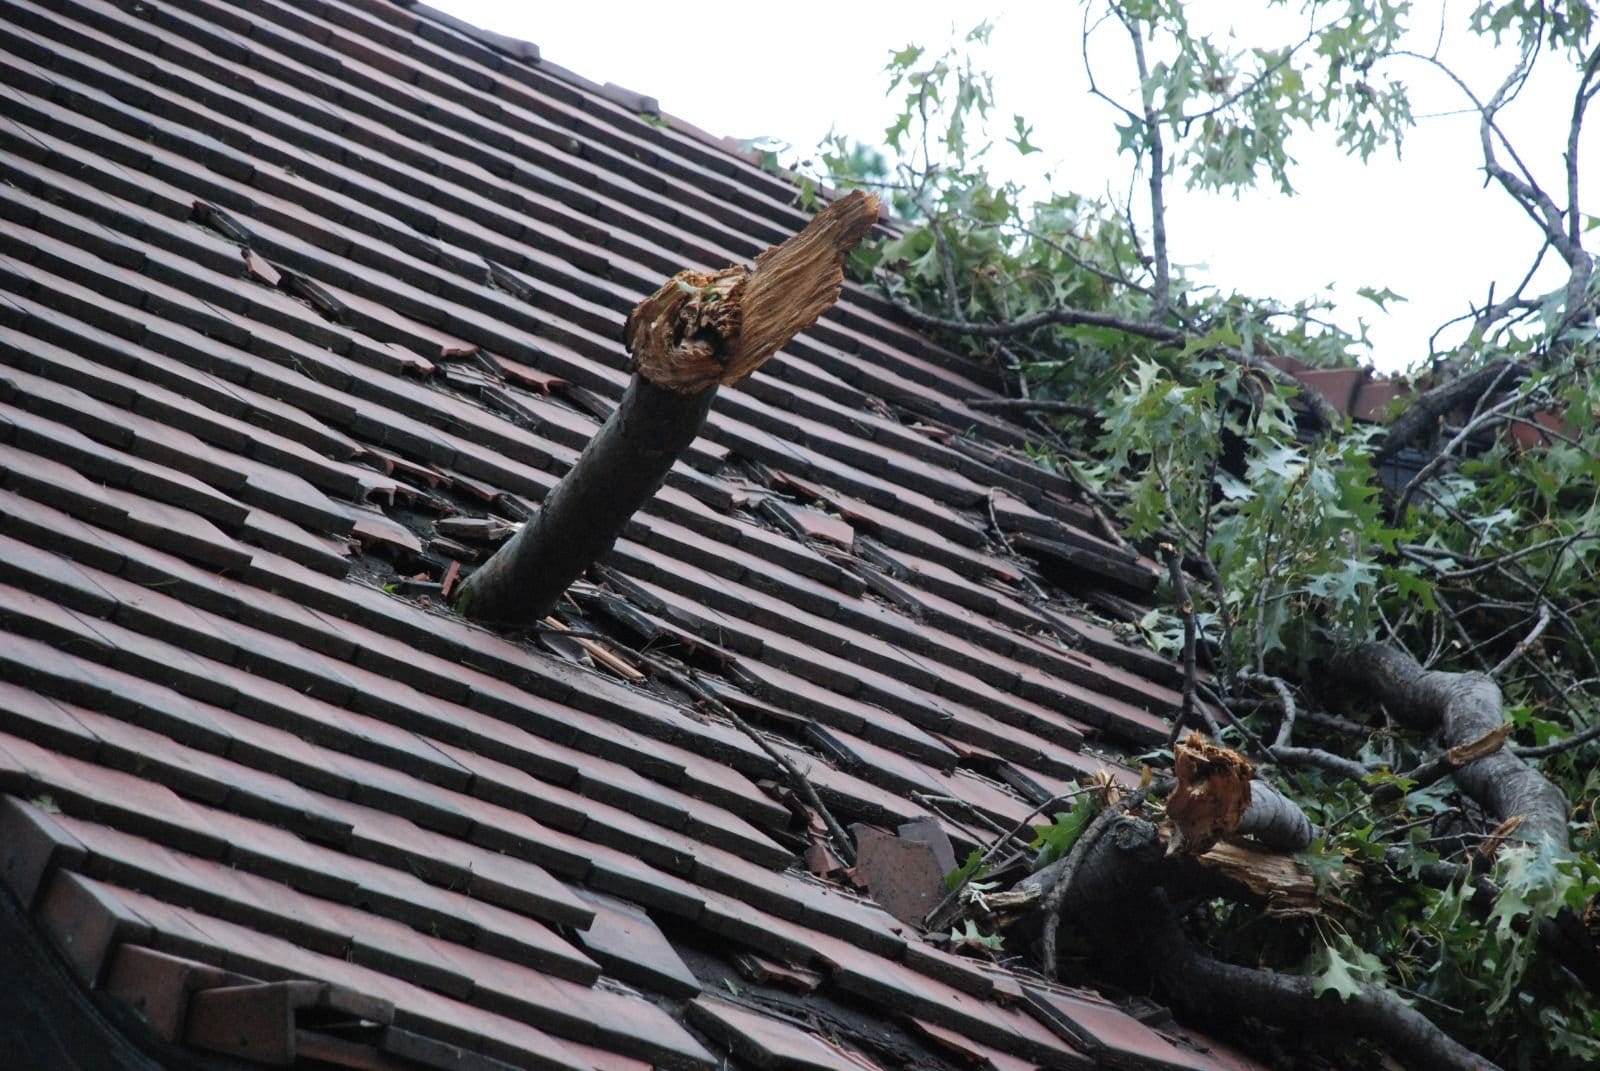 Keystone Roof emergency repair